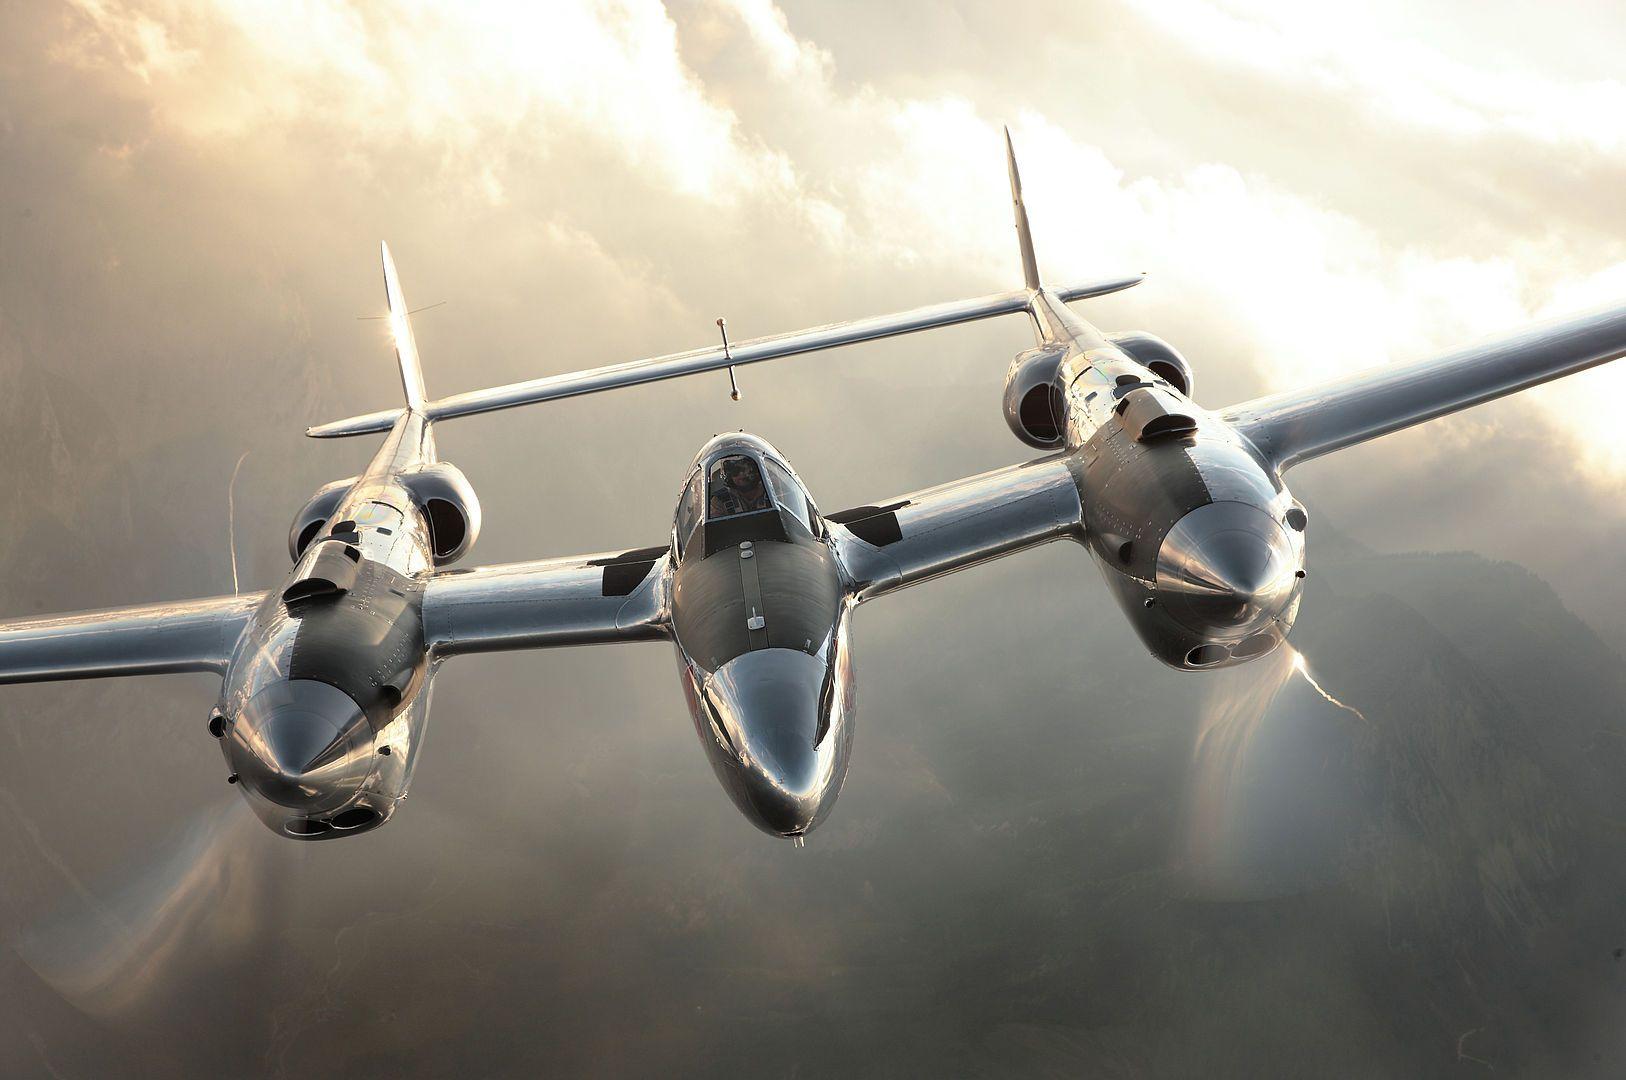 Lockheed P 38 Lightning. The Flying Bulls